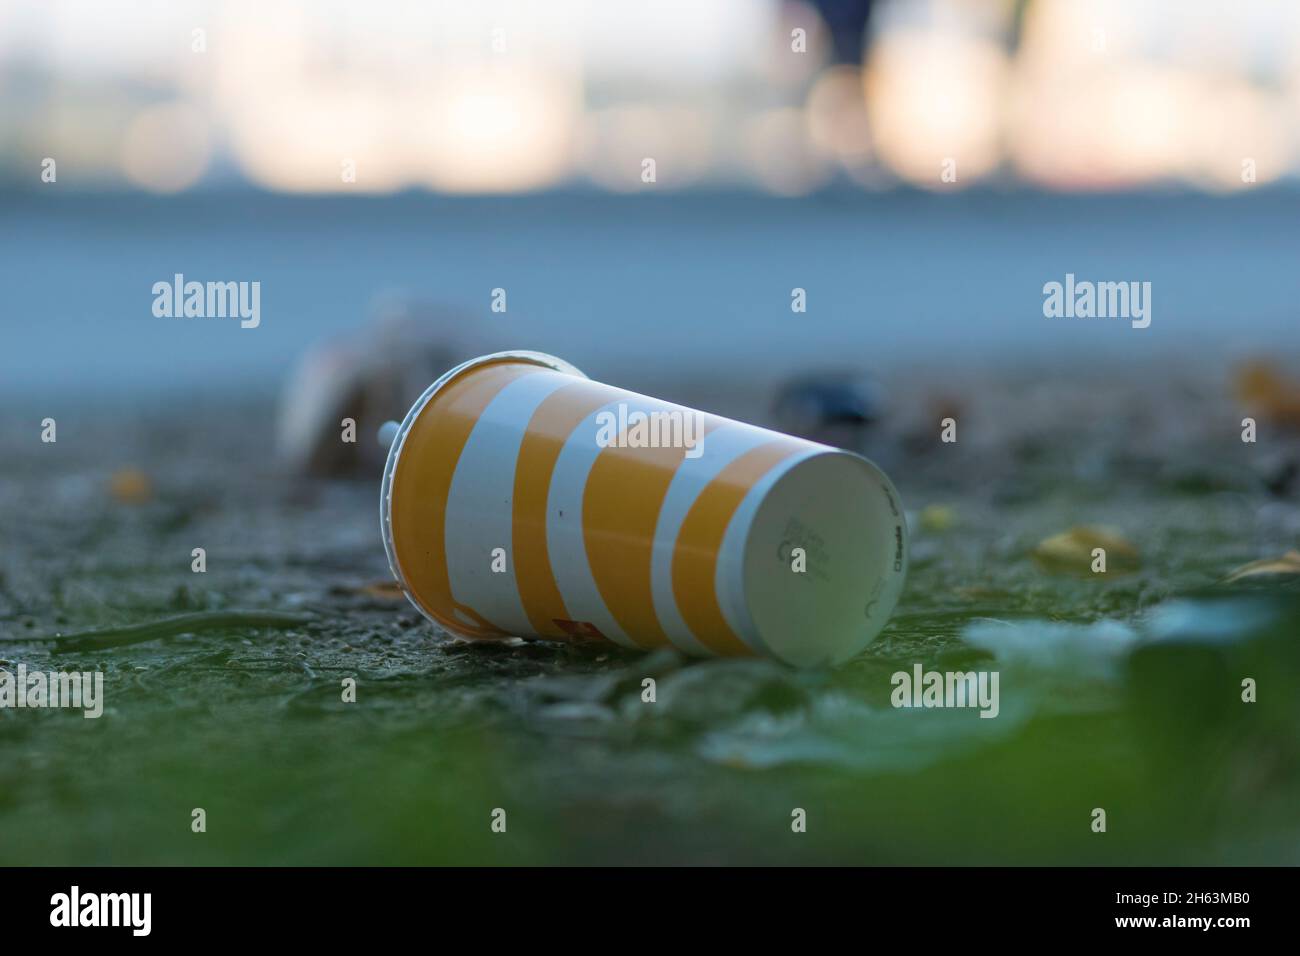 una copa de bebida, una taza desechable, desechada al aire libre en kiel, alemania Foto de stock